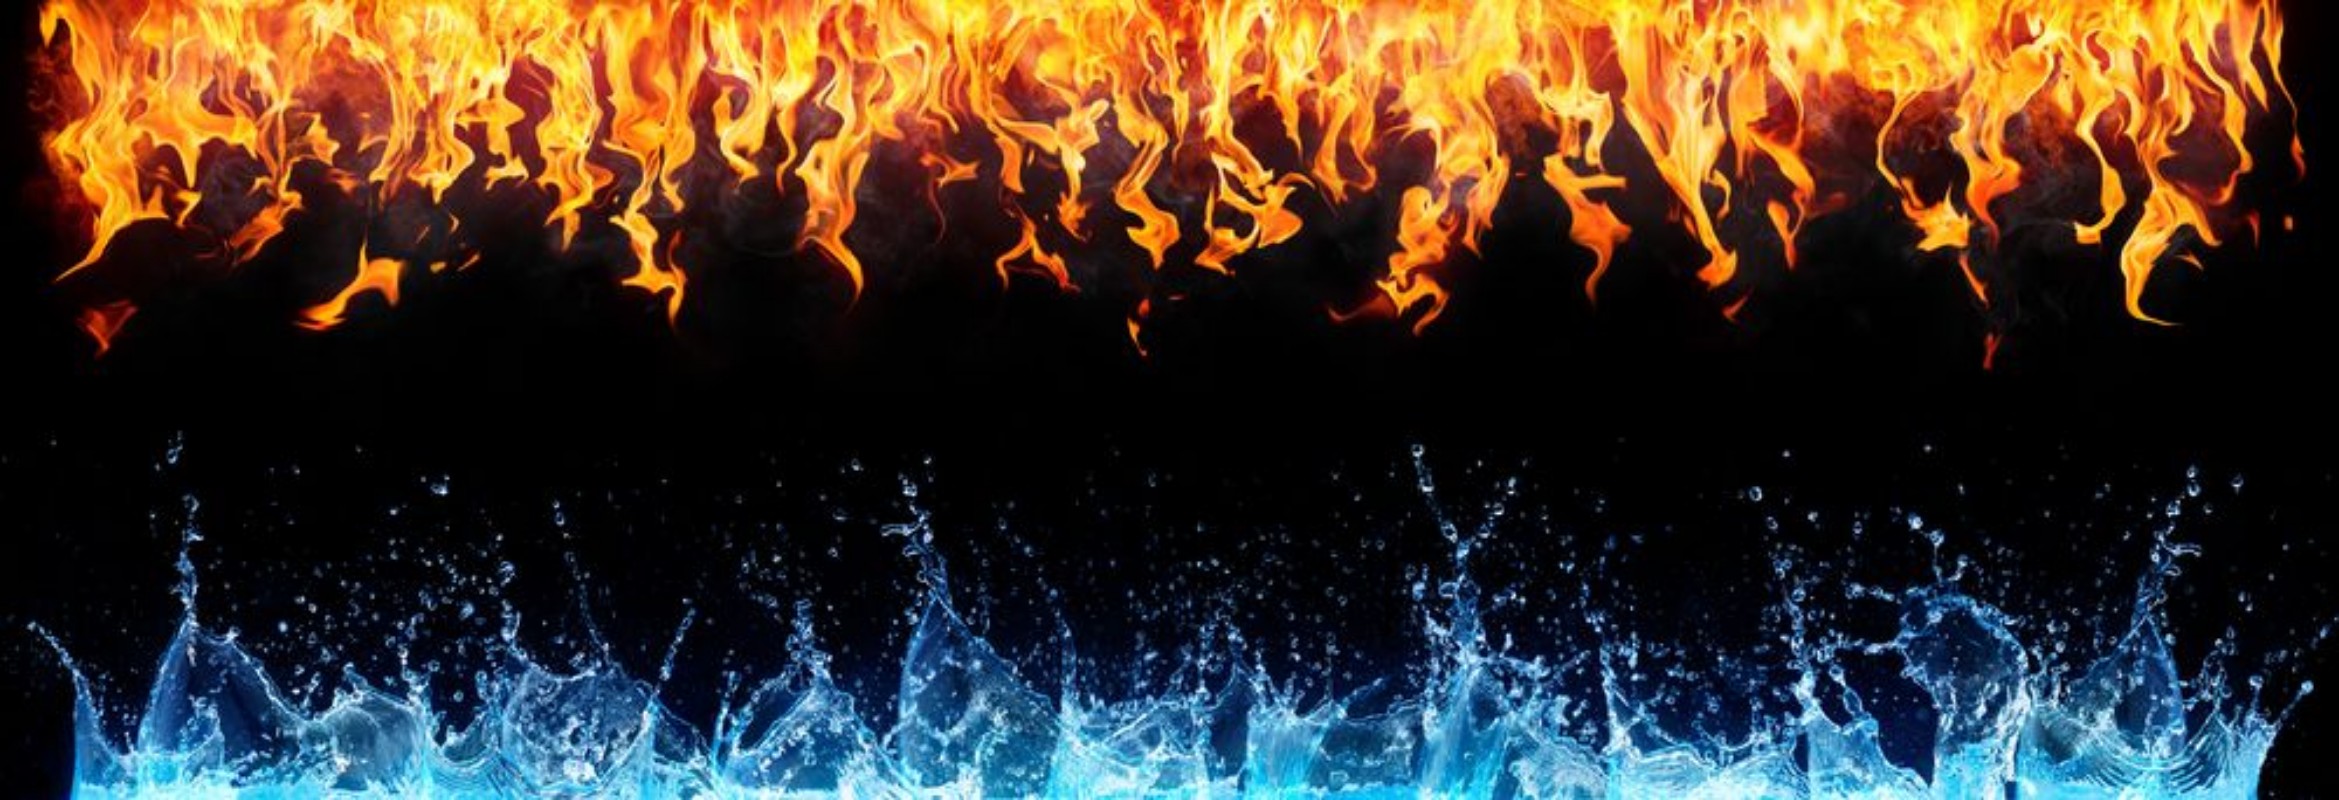 Afbeeldingen van Fire and water on black - opposite energy